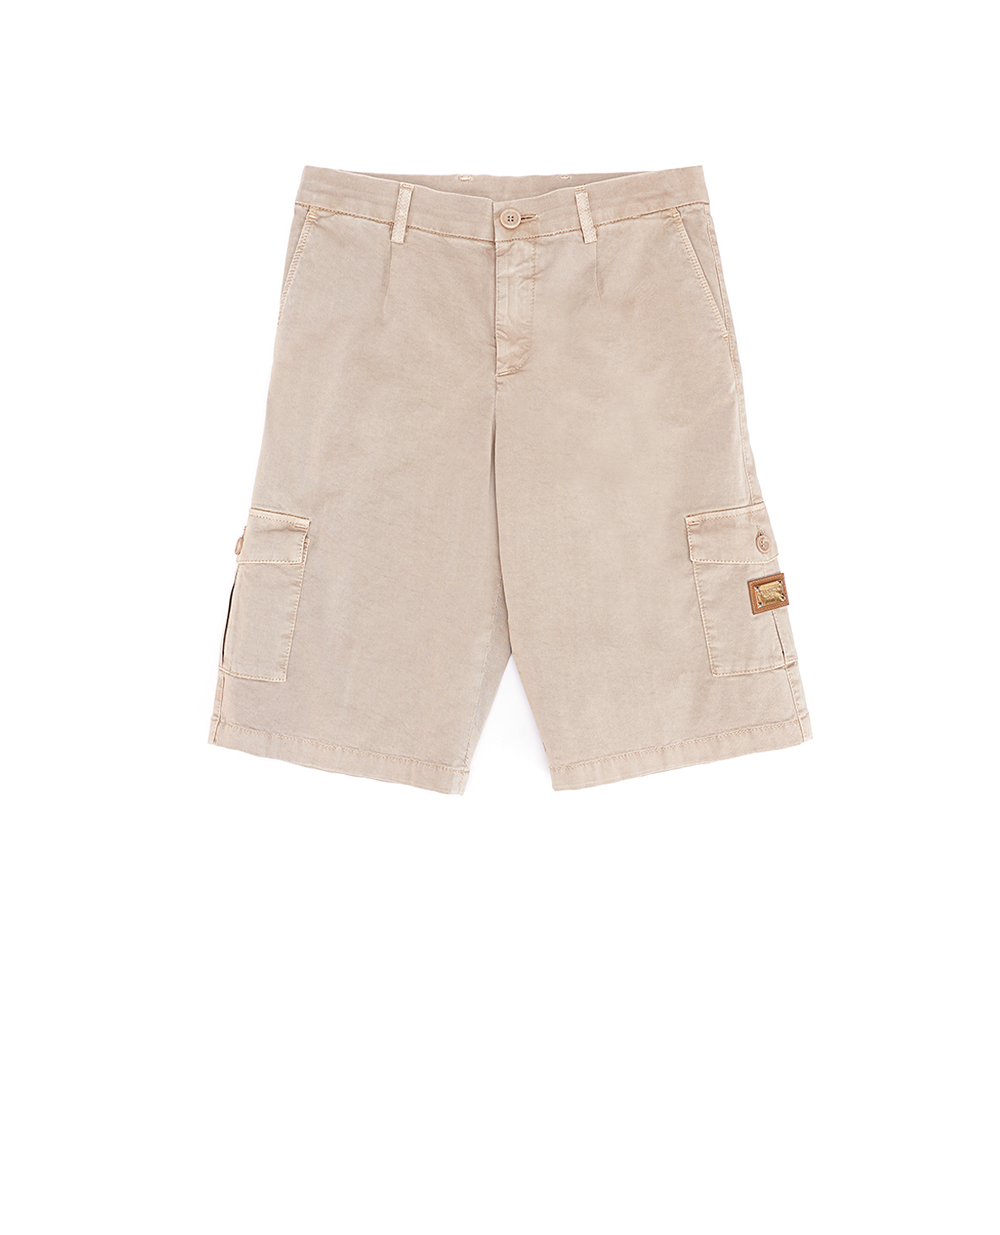 Детские шорты (костюм) Dolce&Gabbana Kids L43Q21-LY071-B, бежевый цвет • Купить в интернет-магазине Kameron